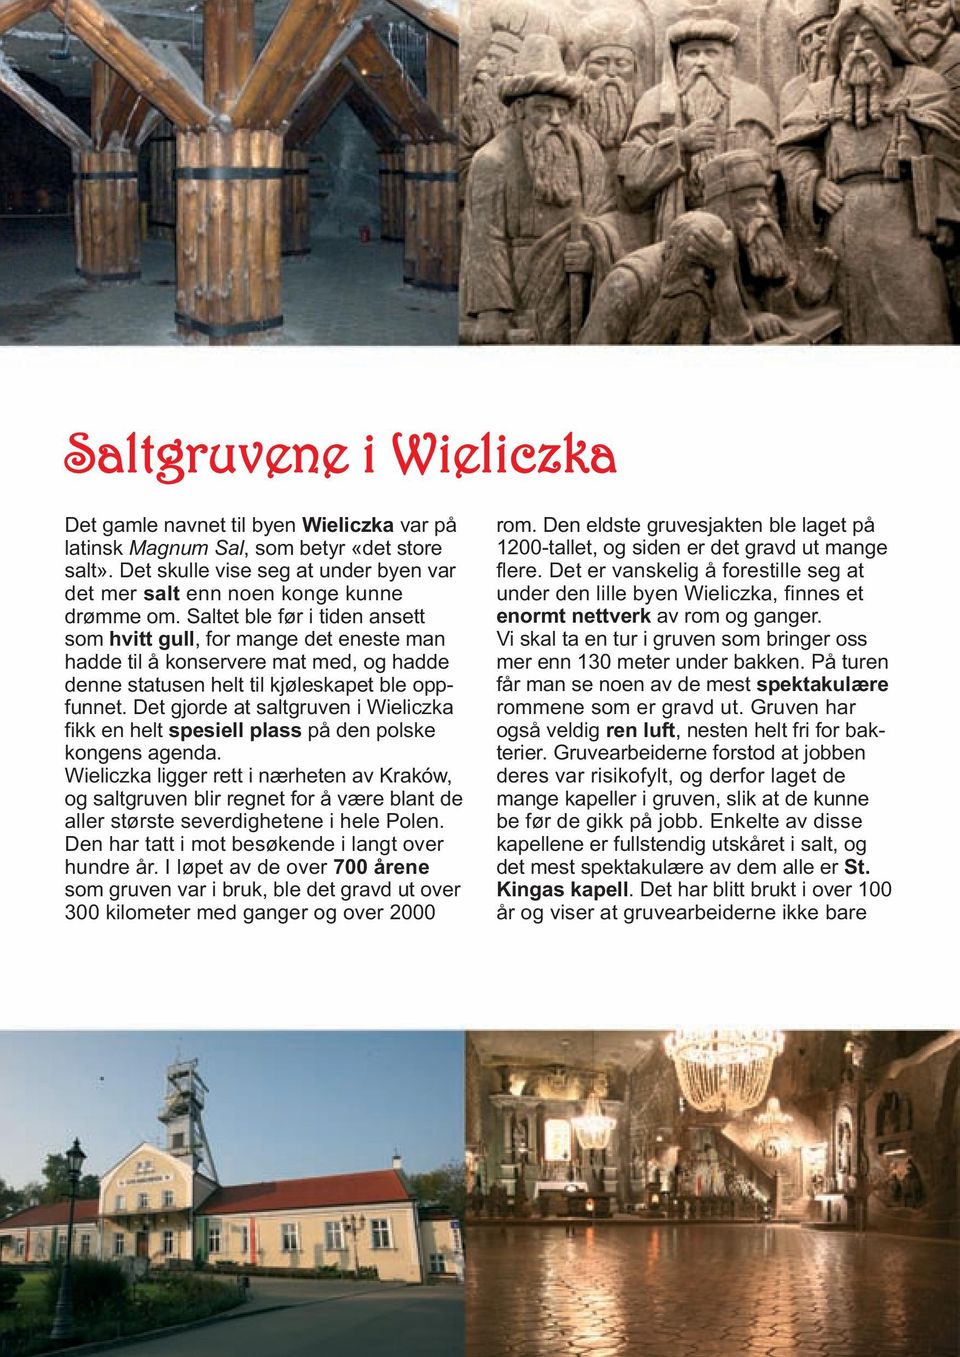 Det gjorde at salt gruven i Wieliczka fikk en helt spesiell plass på den polske kongens agenda.